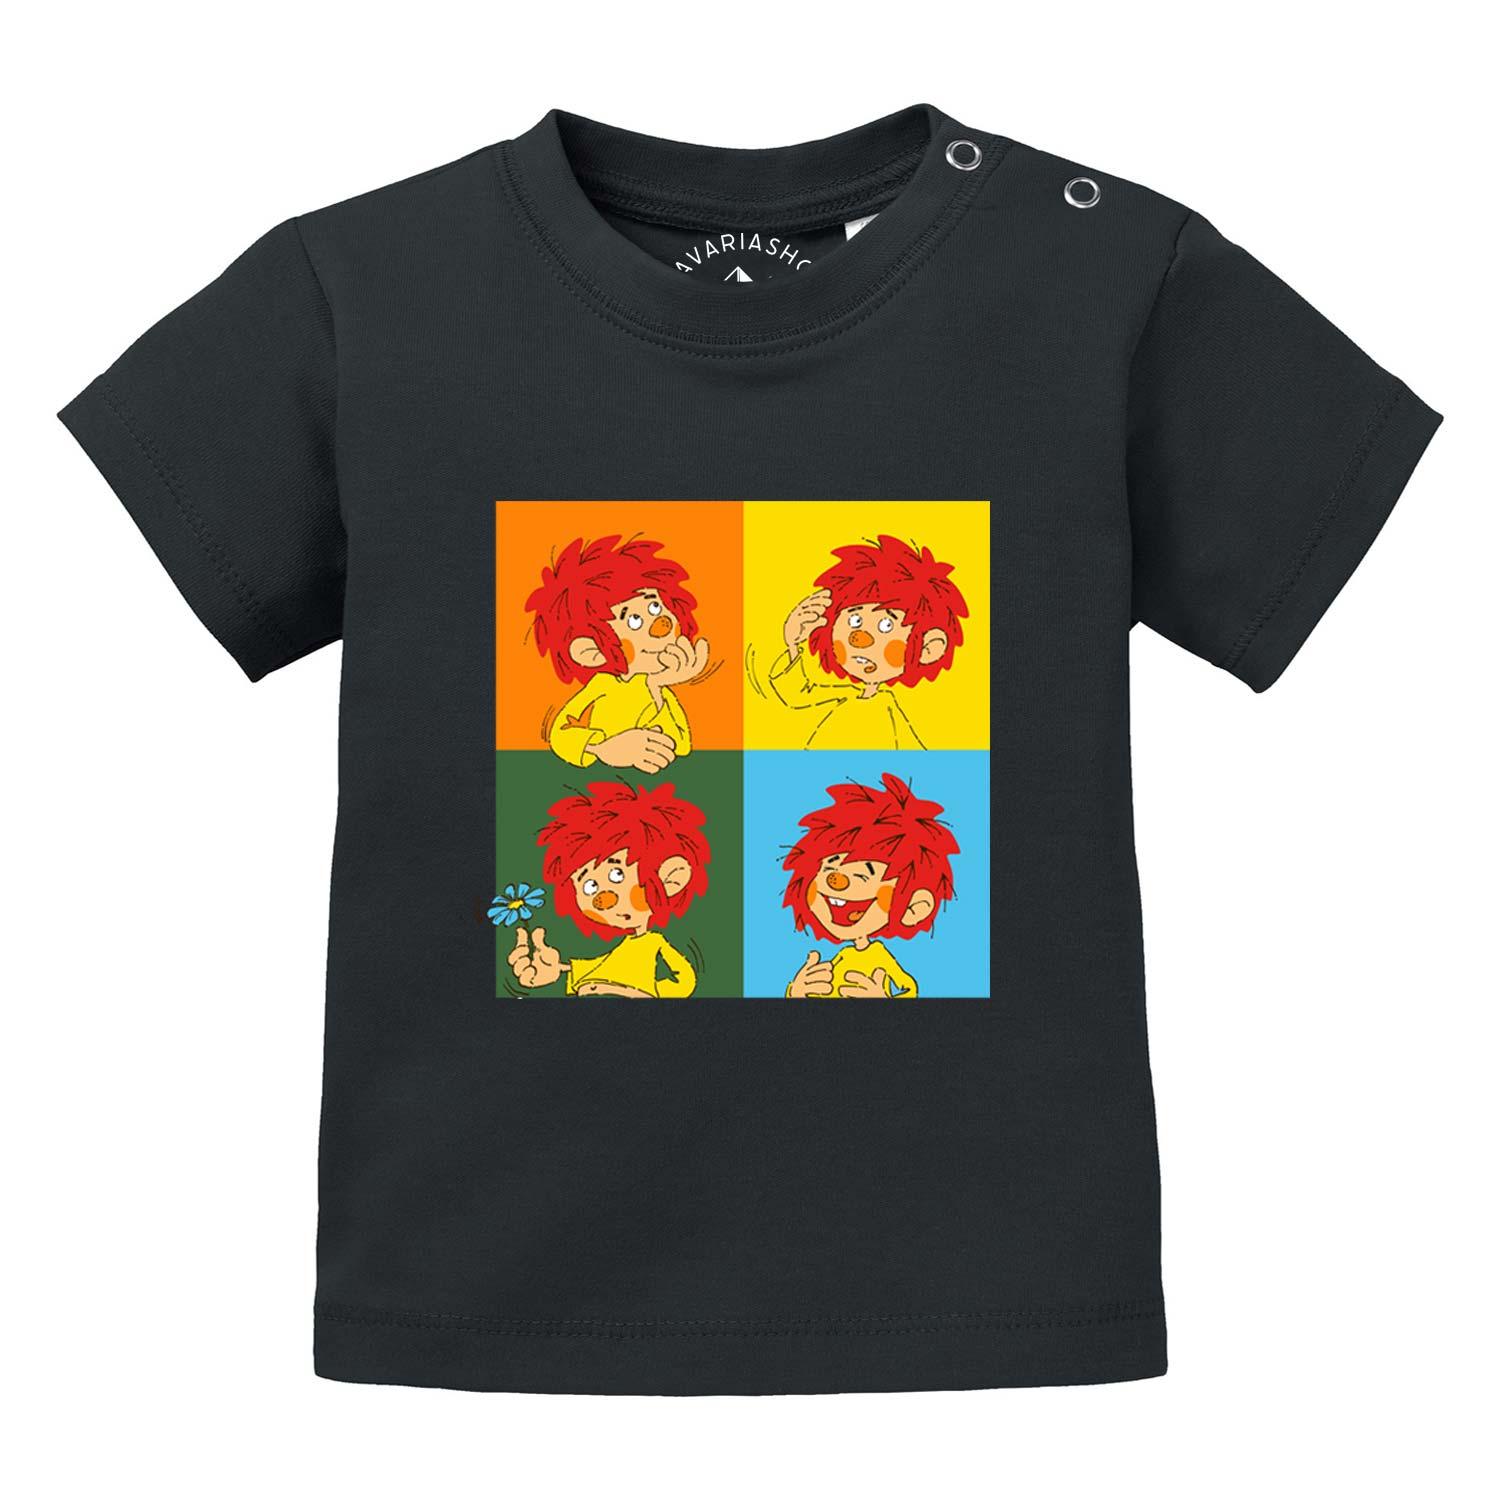 ®Pumuckl Baby T-Shirt "Meisterwerk" - bavariashop - mei LebensGfui